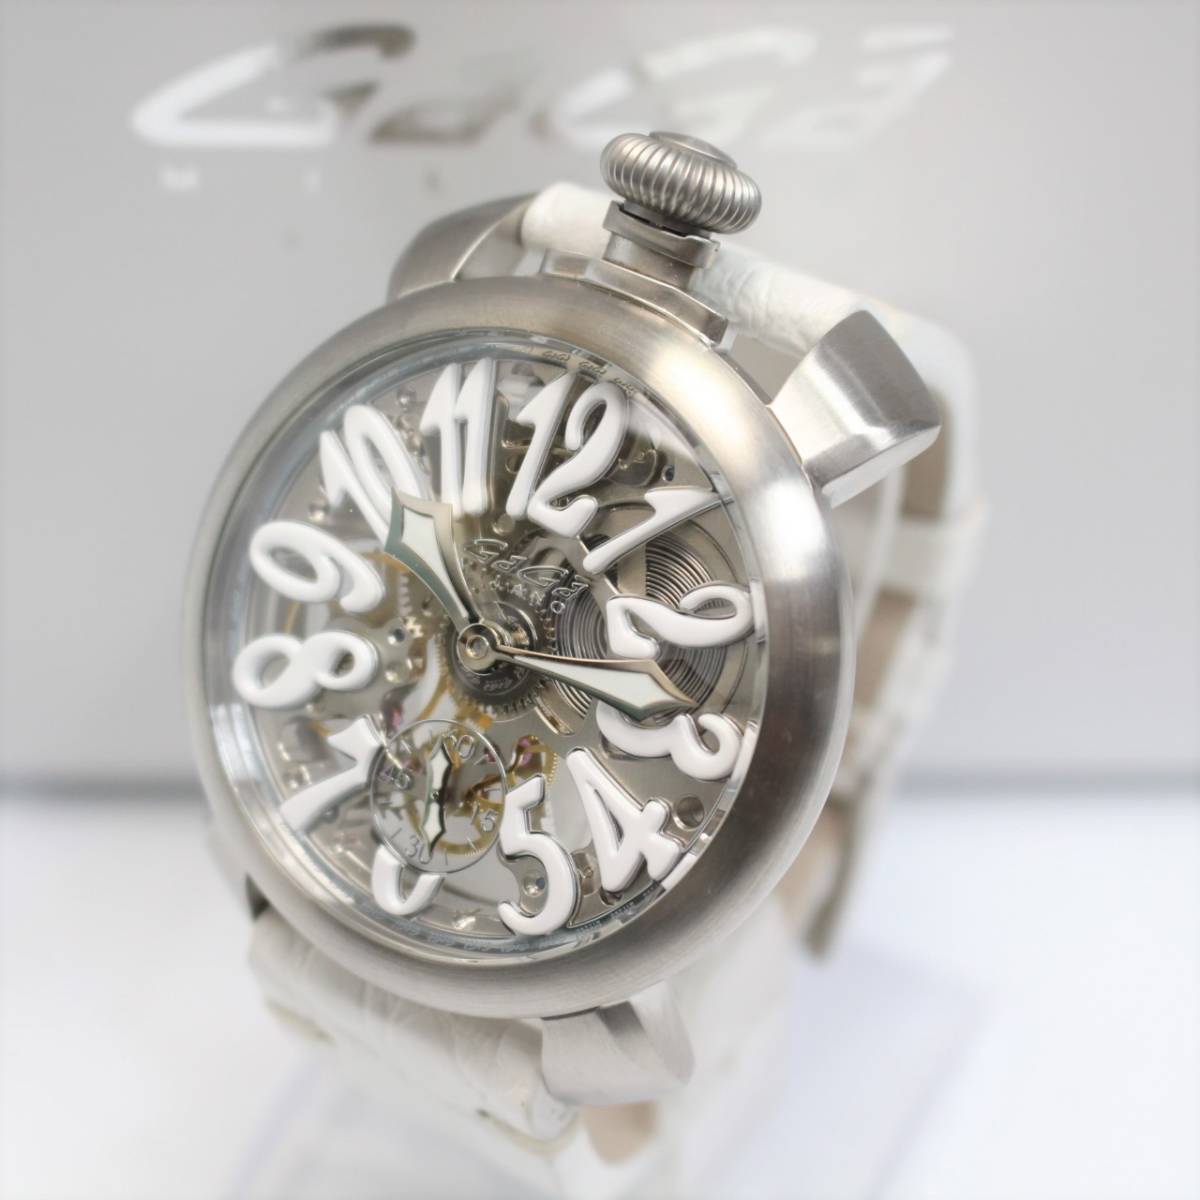 ガガミラノ マヌアーレ 48MM スケルトン 手巻き 腕時計 5310.01 メンズ レザー白ベルト